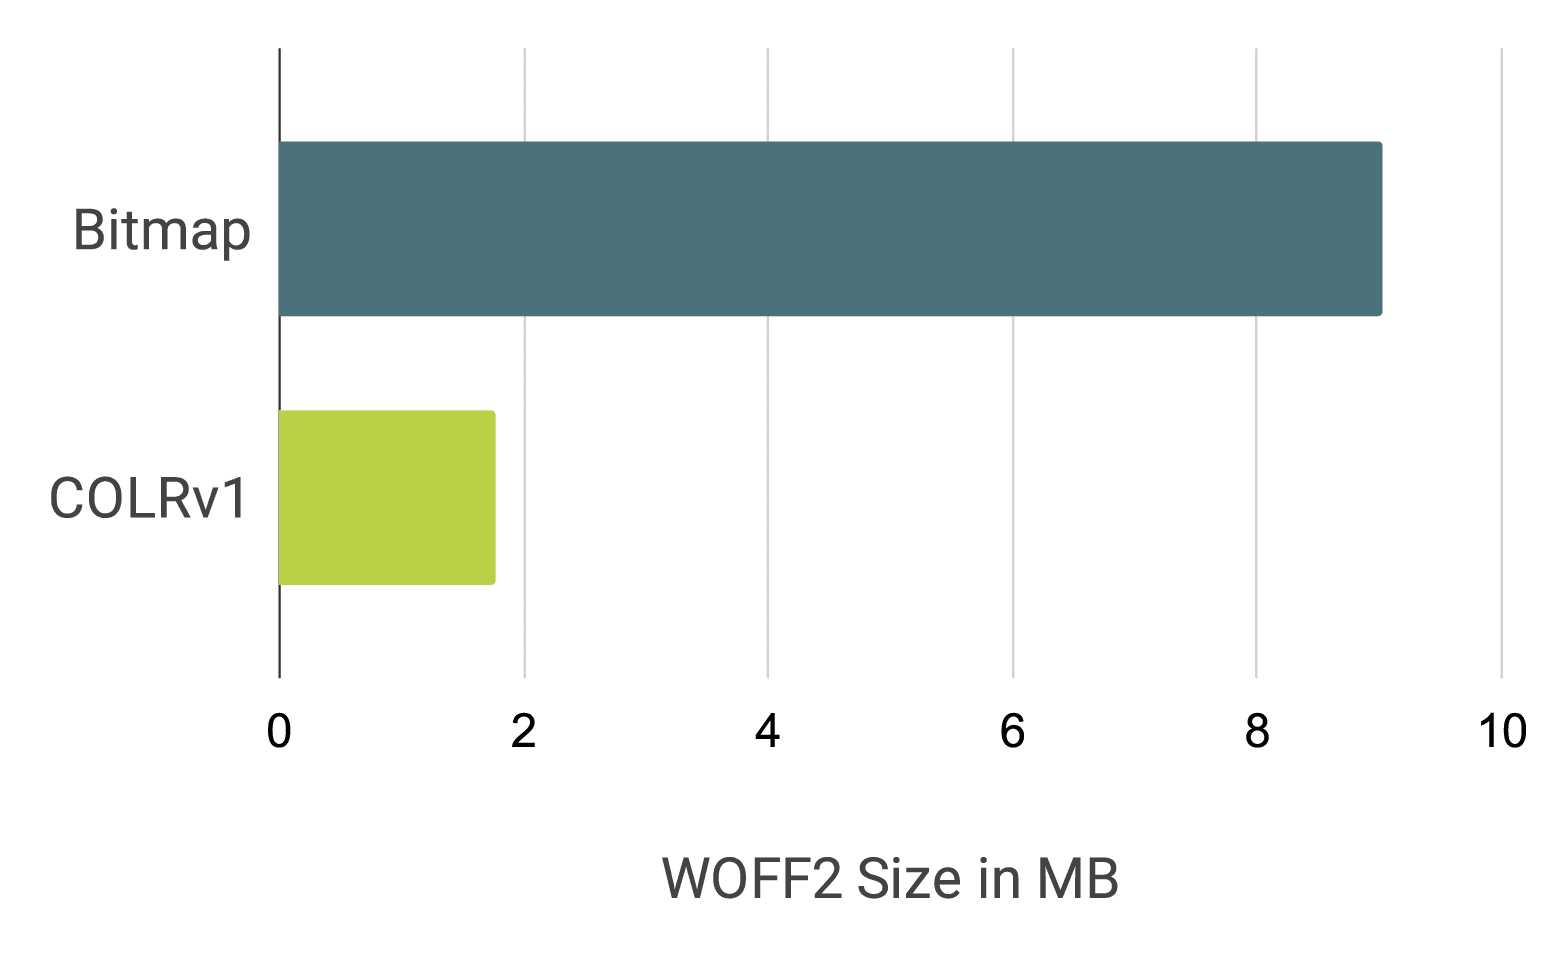 বিটম্যাপ ফন্ট এবং COLRv1 ফন্ট হিসাবে নোটো ইমোজির তুলনা করে বার চার্ট, প্রায় 9MB বনাম 1.85MB